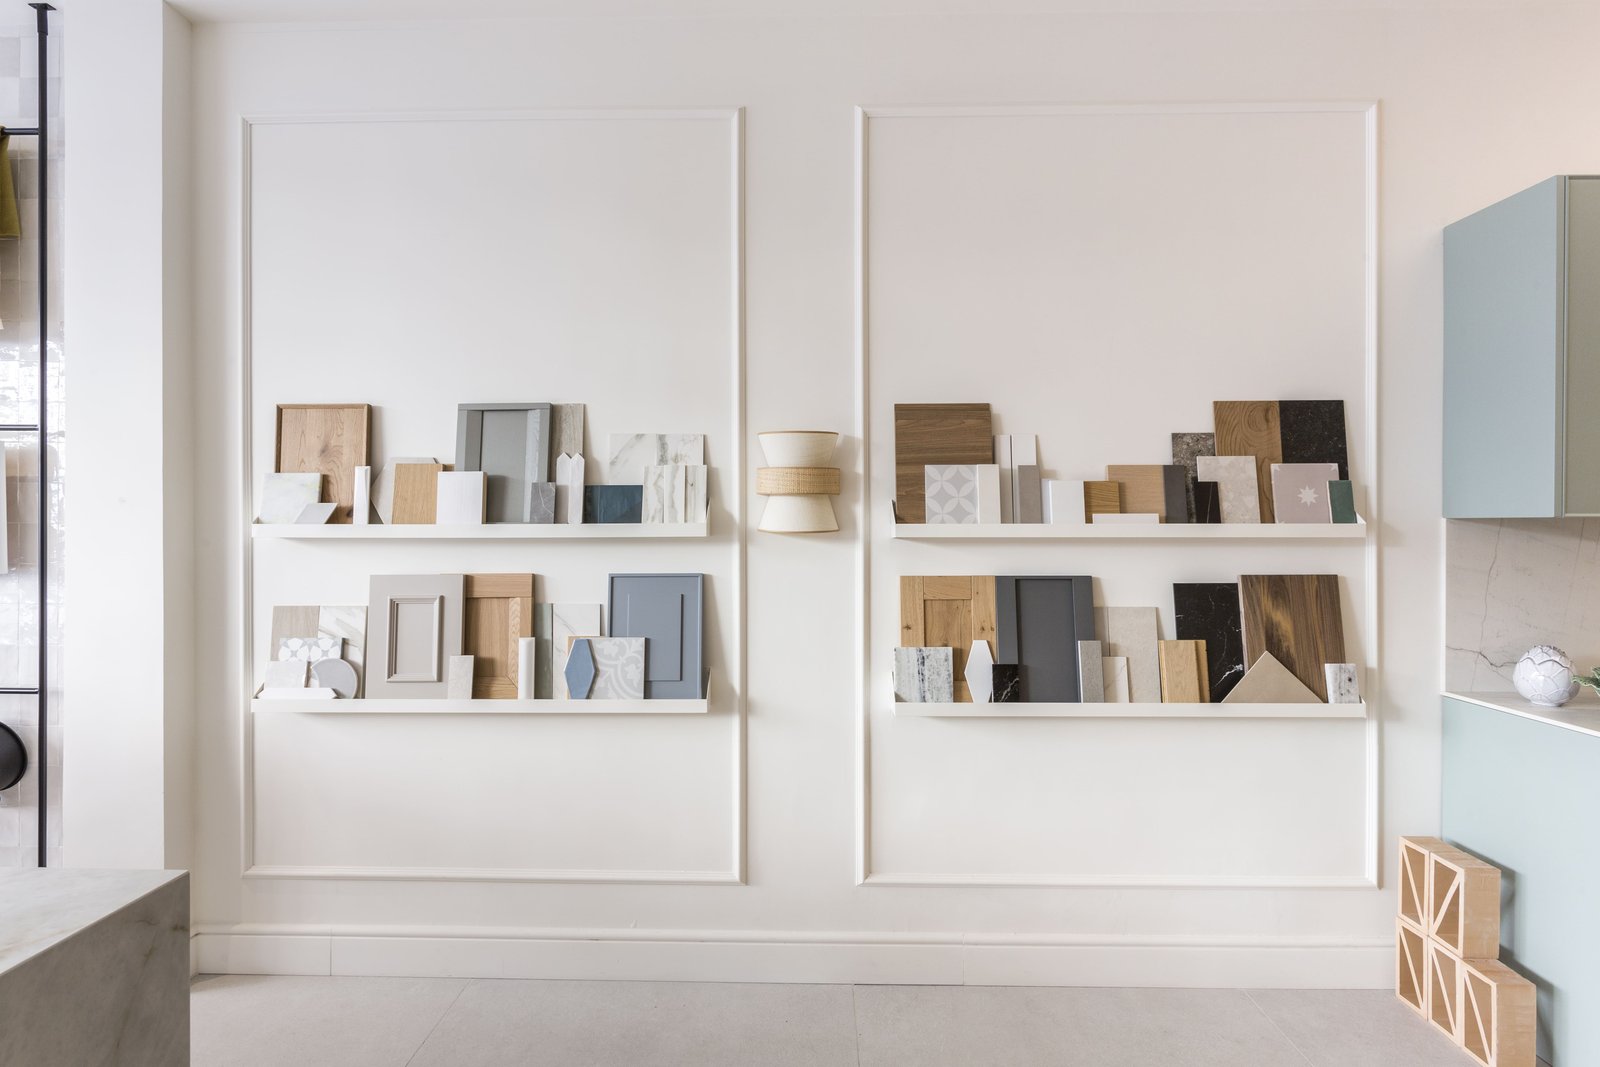 Descubre nuestro showroom de interiorismo y encuentra la inspiración que necesitas para crear un espacio único y personalizado.